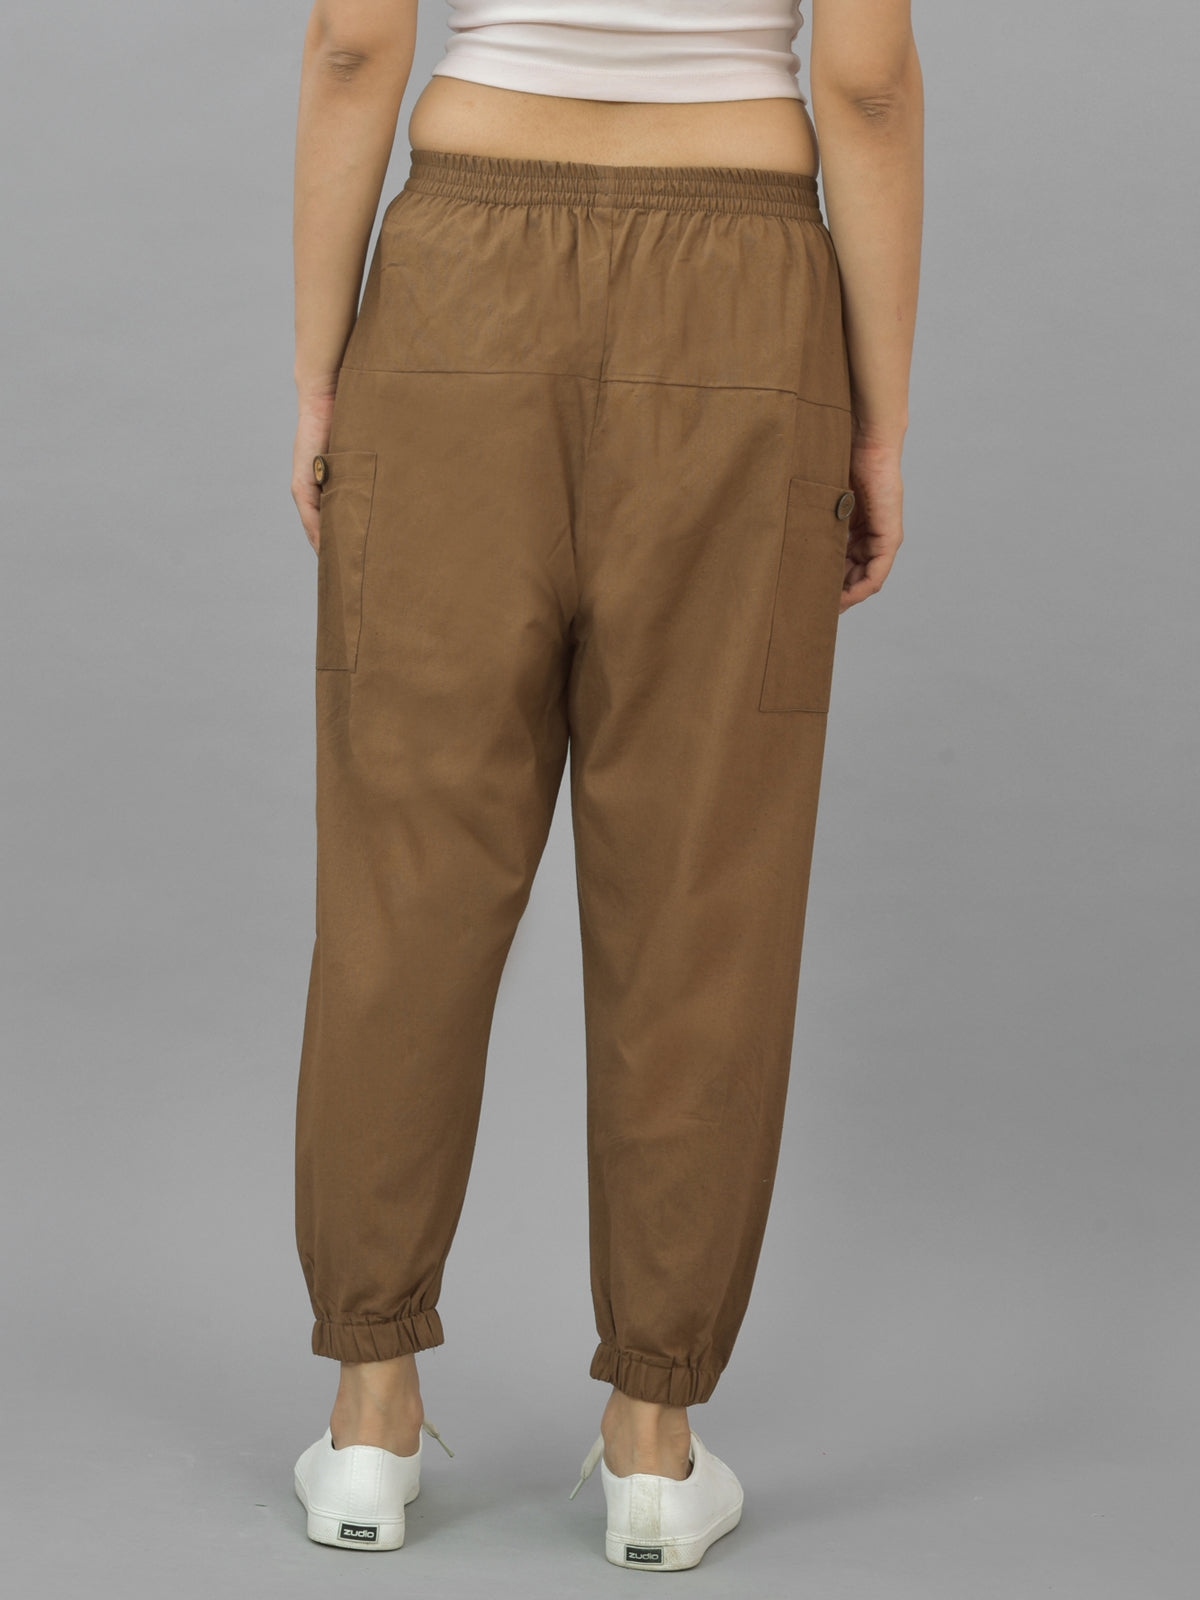 Quaclo Women's Brown Four Pocket Cotton Cargo Pants